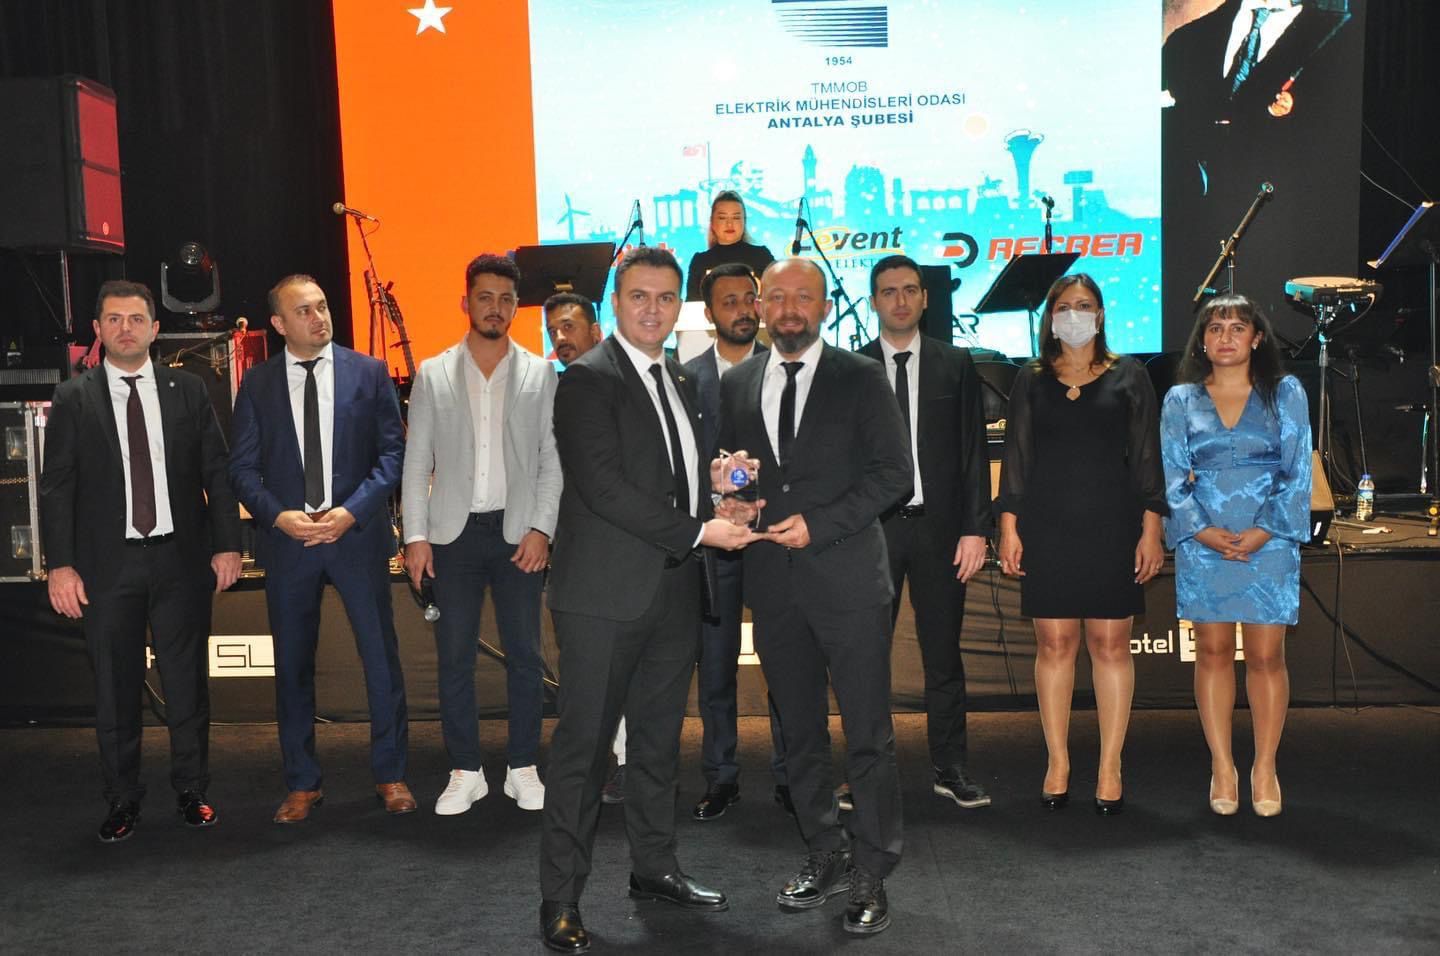 Antalya Elektrik Mühendisleri Odası'nın 2021 Yılı Ana Sponsoru Levent Elektrik